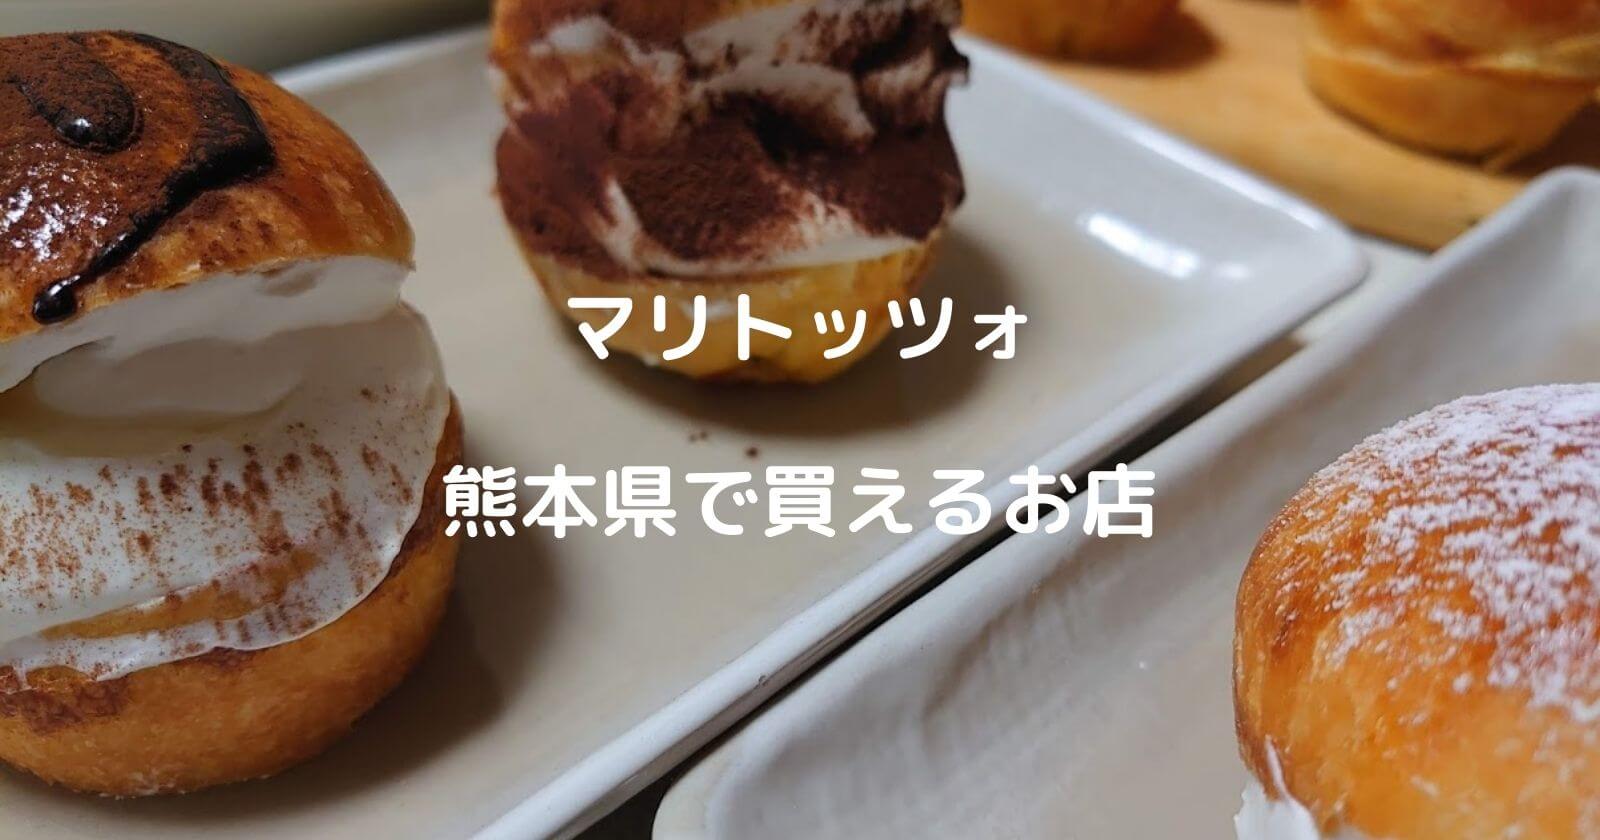 マリトッツォ 熊本県で買えるお店 人気のパン屋さんなどをご紹介